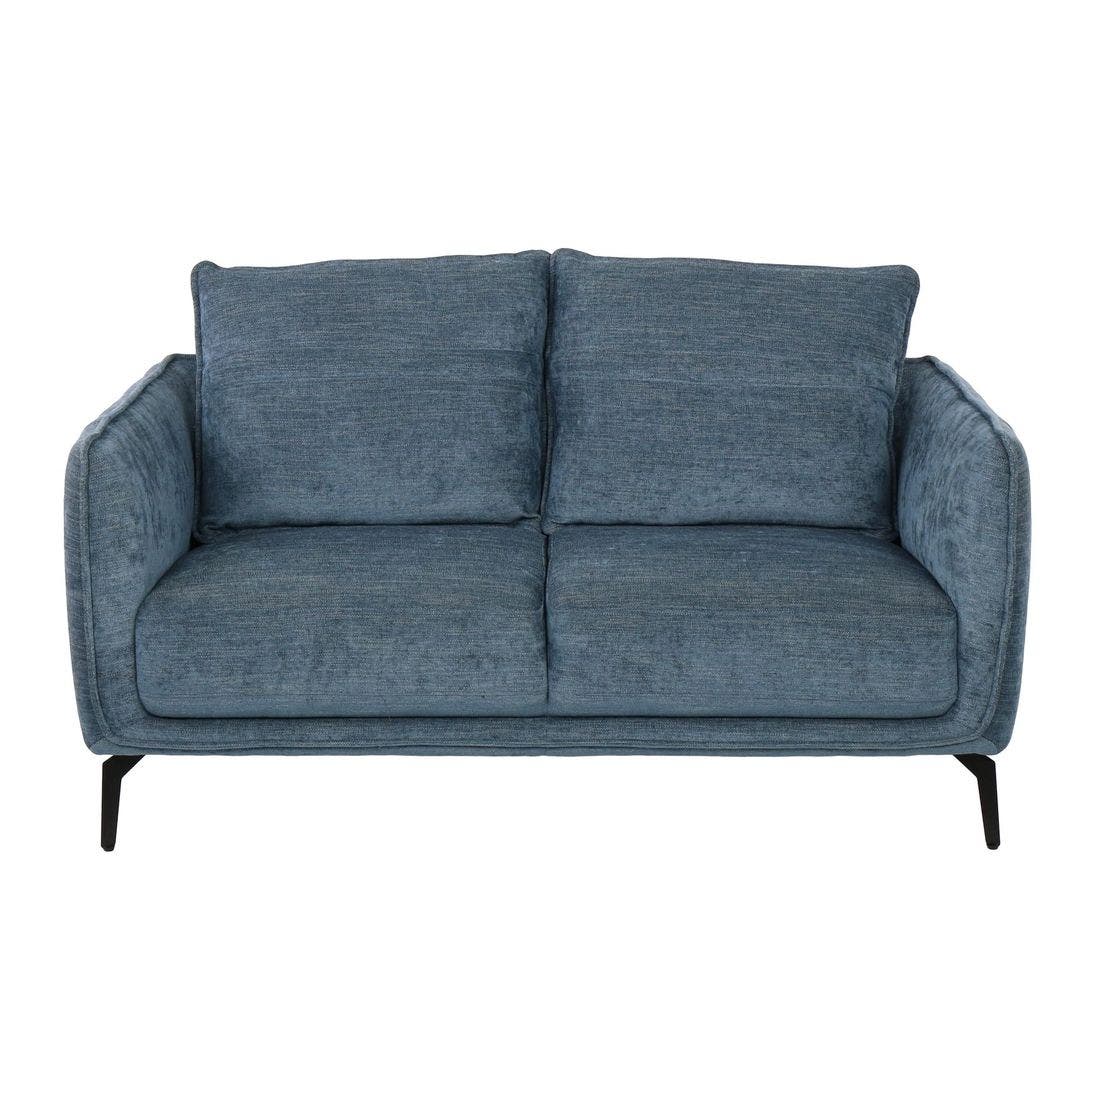 19179541-lapurin-furniture-sofa-recliner-sofas-01